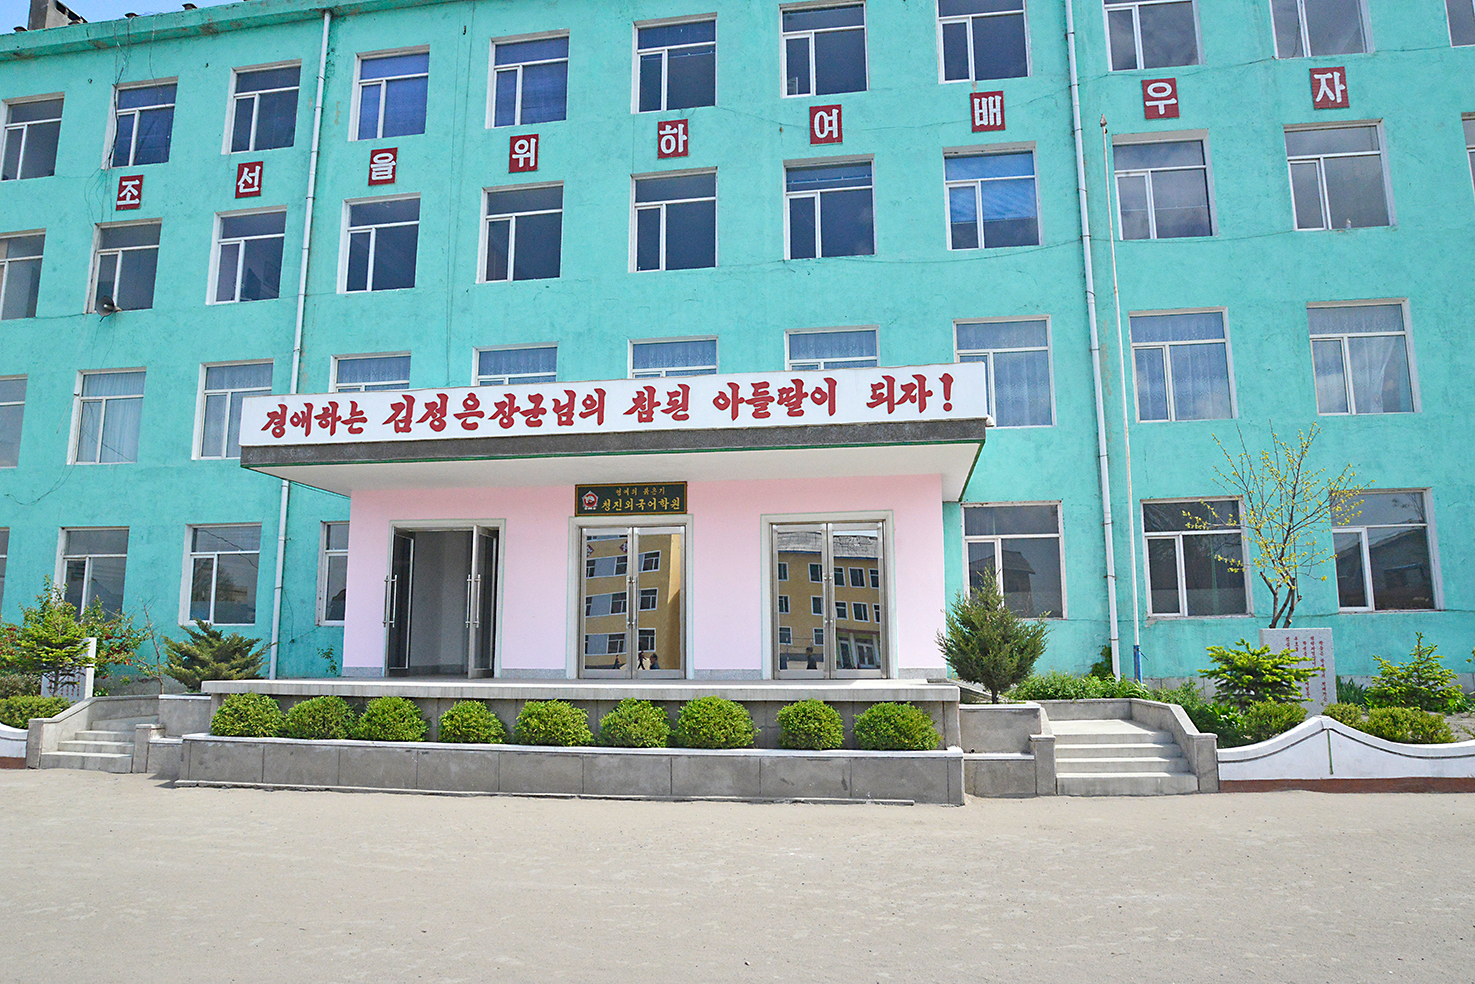 78 Chongjin School